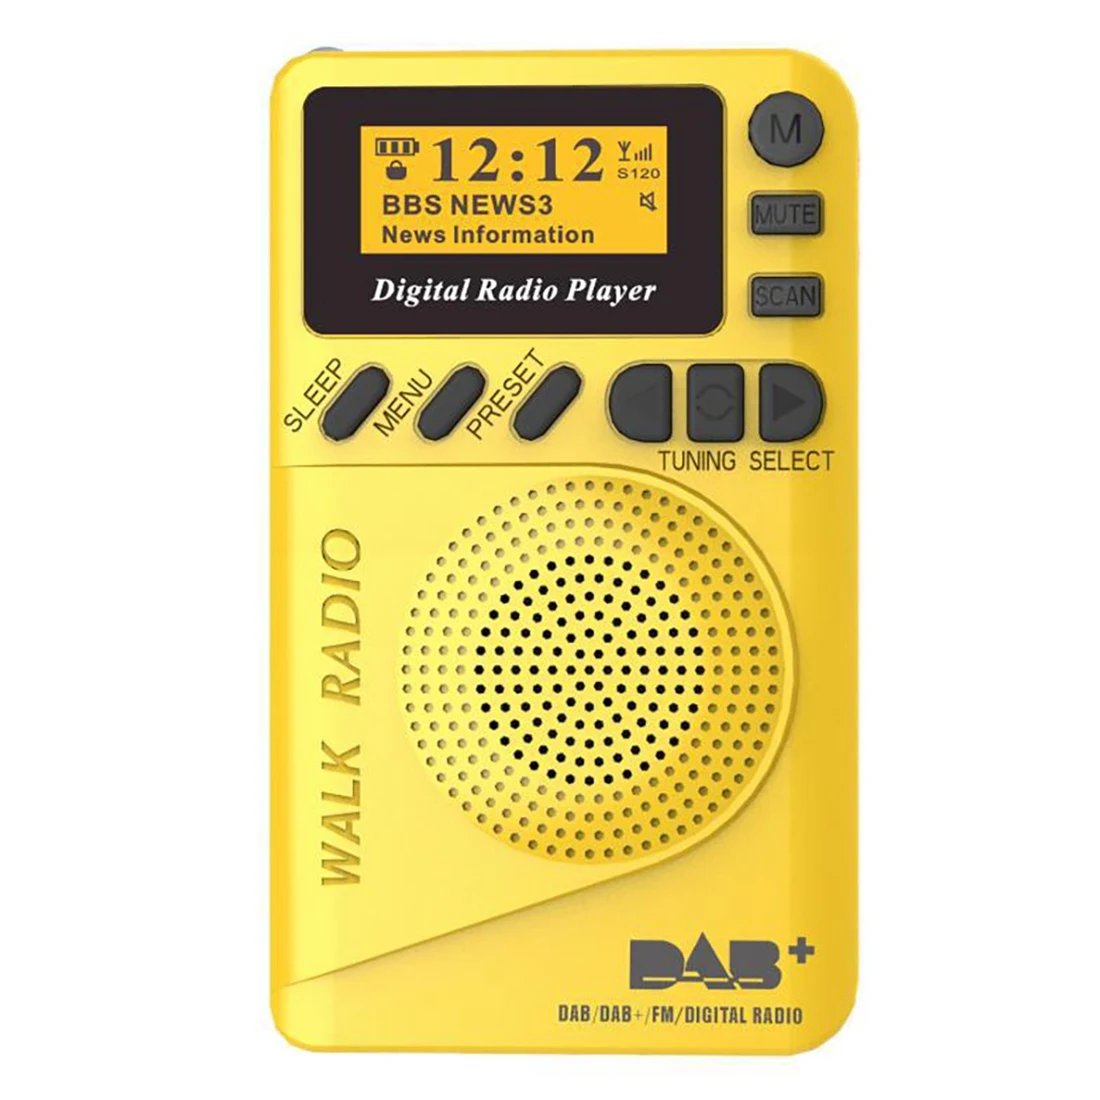 DAB Digital FM Radio Portable DAB/DAB+/FM Digital Radio Receiver Demodulator with 1.5 Inch LCD Screen 1000MAh Battery